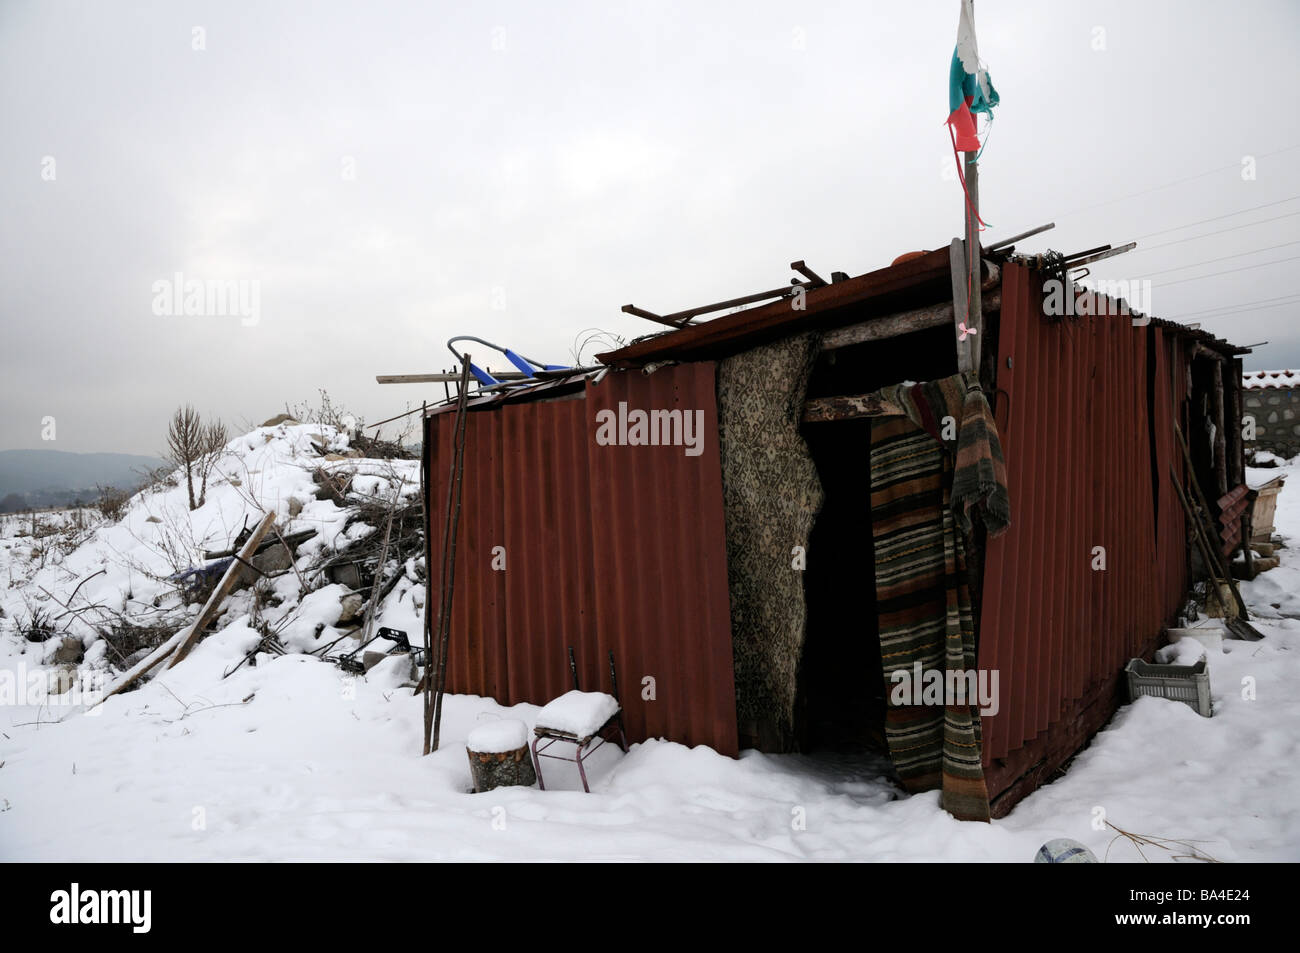 Wellblech Hütte im Schnee mit bulgarischen Flagge.  Predela, ländliche Bulgarien, in der Nähe des beliebte Skigebiets Bansko. Stockfoto